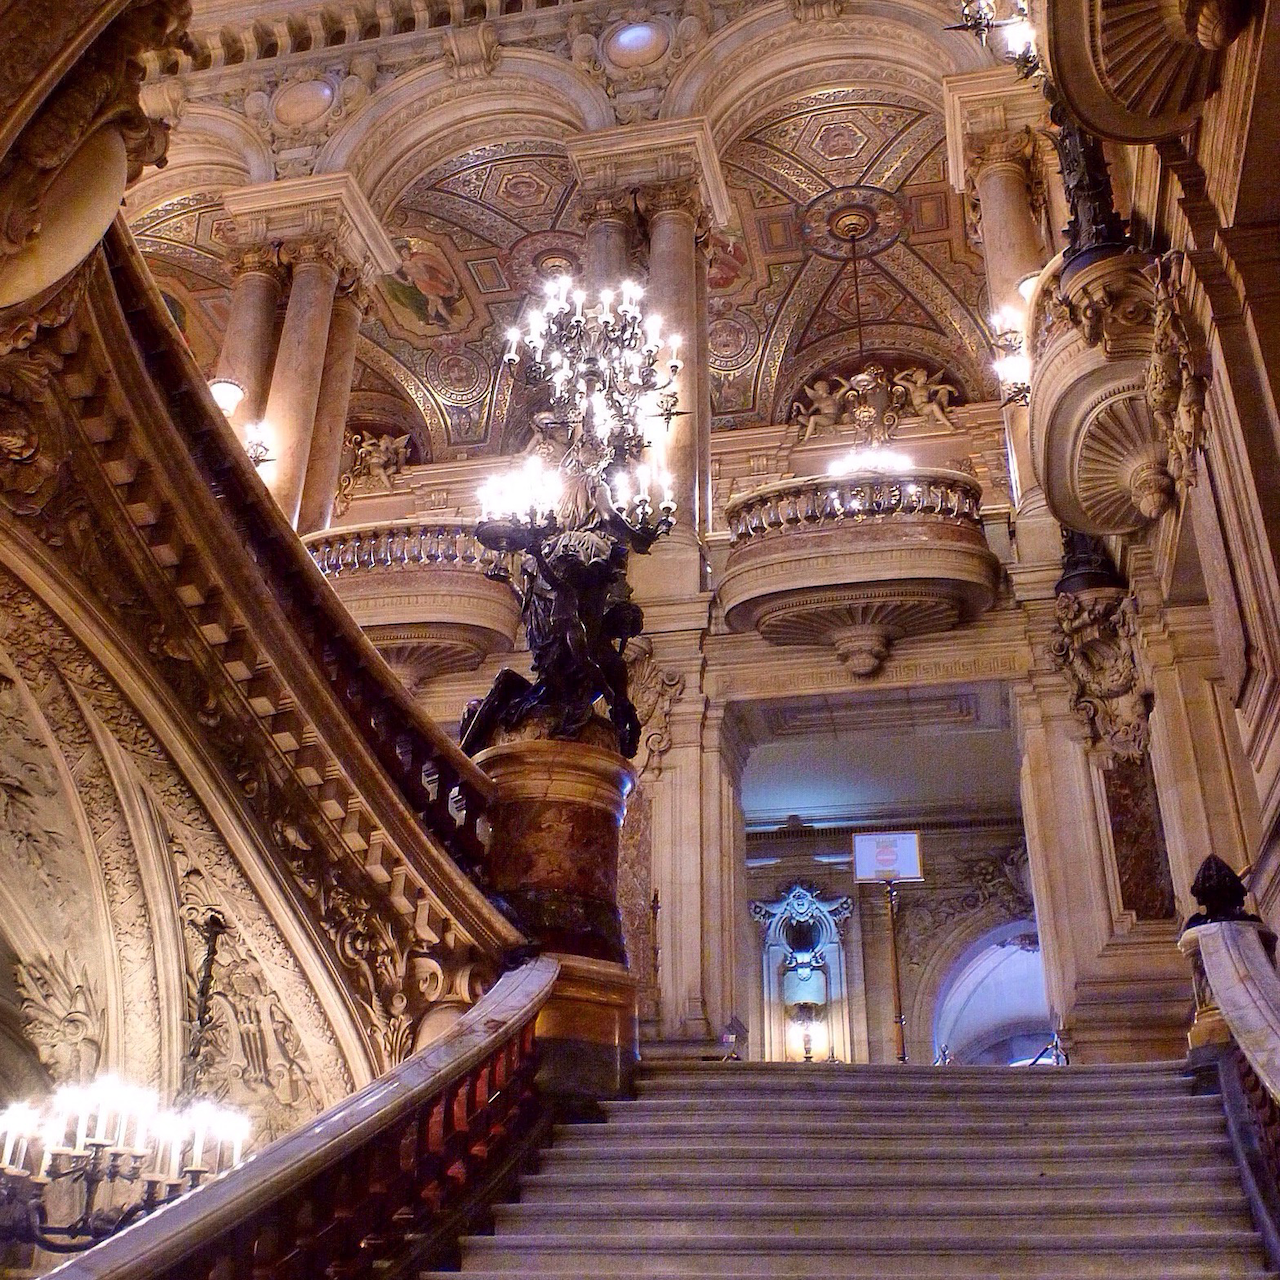 Les escaliers de l'opéra Garnier - Paris - France